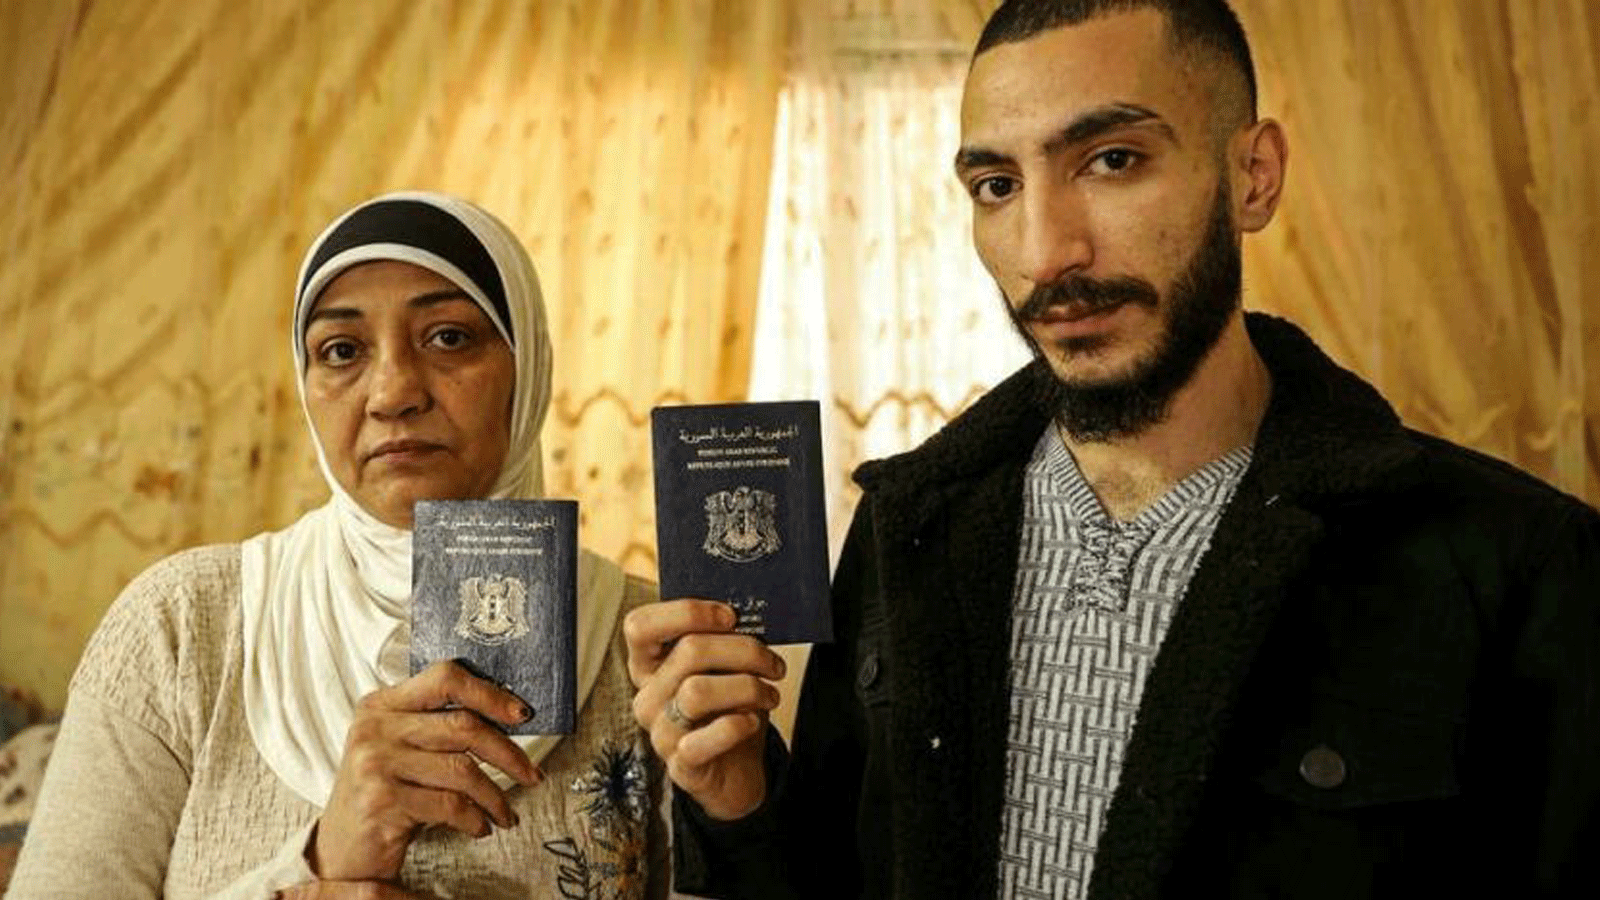 اللاجئون السوريون لينا مصطفى حسون وابنها نورس ديب وصلوا إلى غزة عبر نفق مغلق منذ ذلك الحين وانتهت صلاحية جوازات سفرهم.